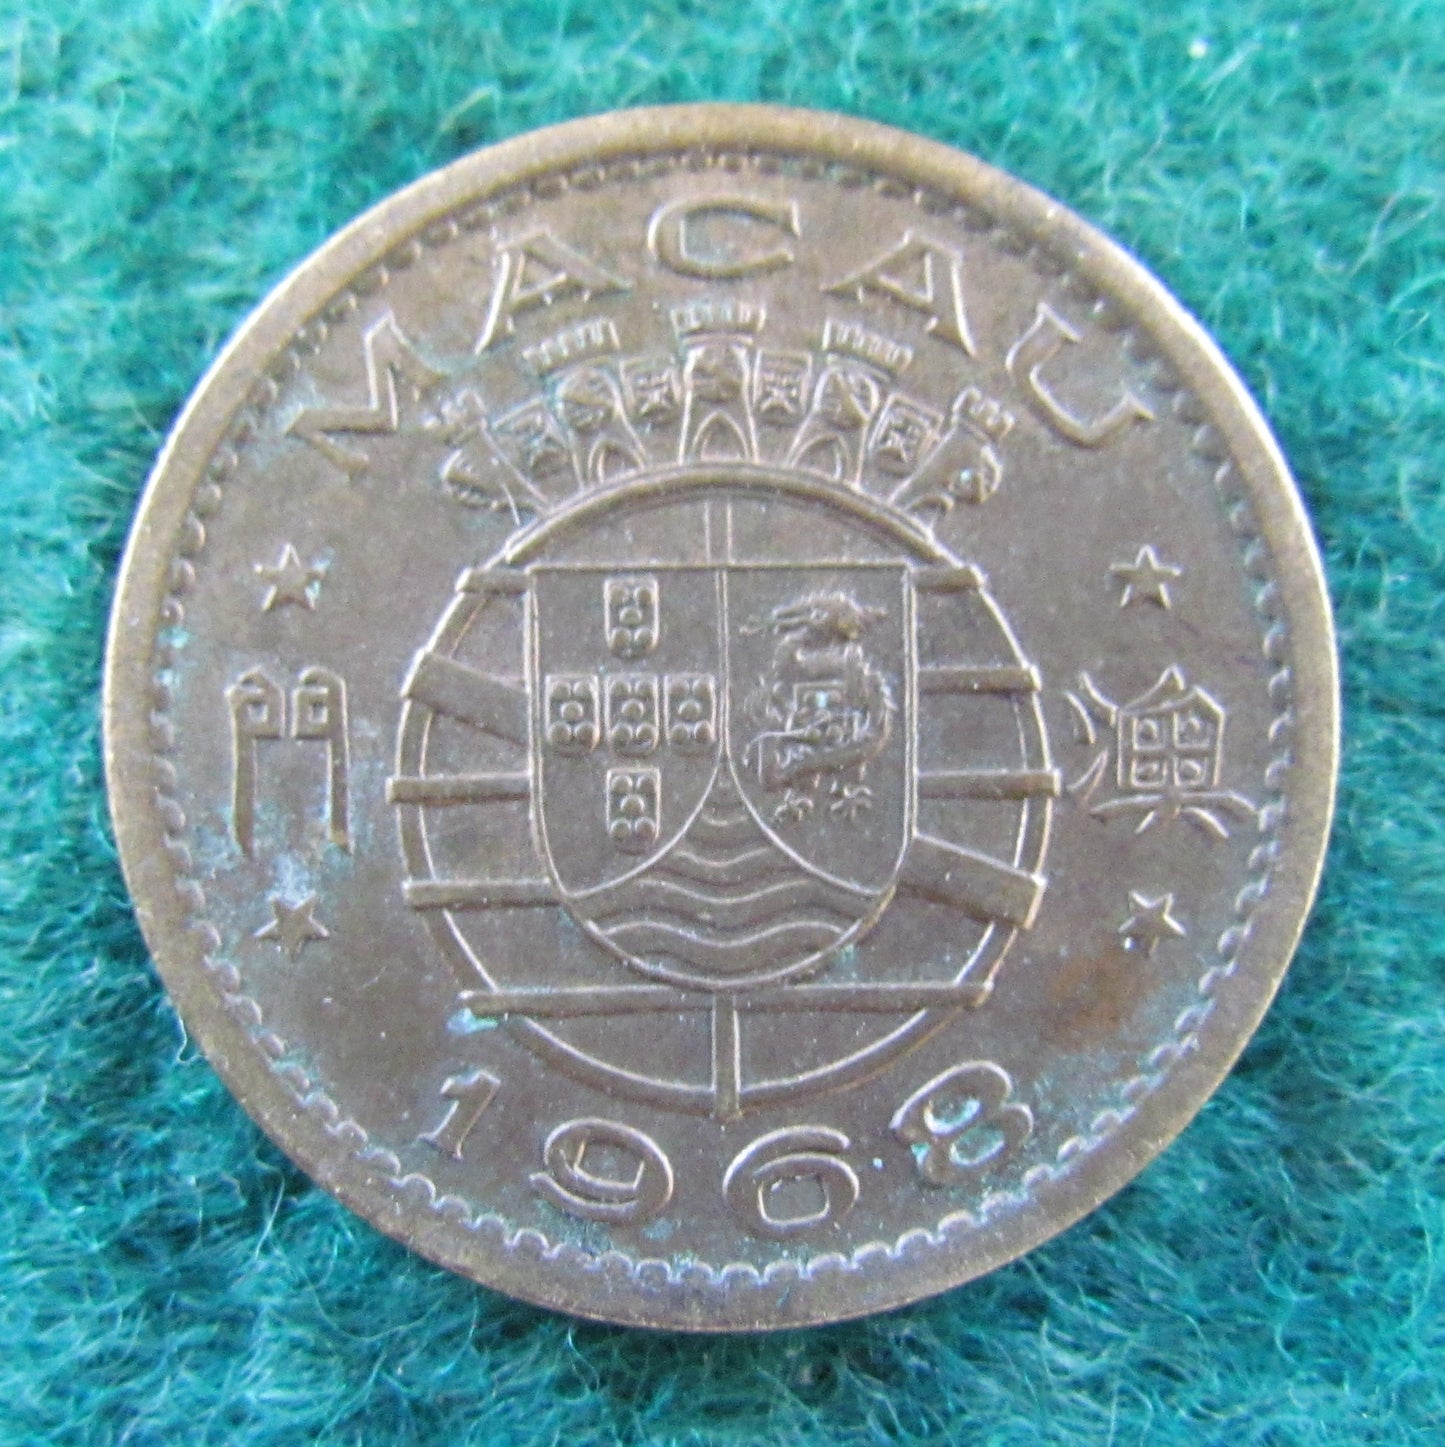 Macau Portuguese Republic 1968 10 Avos Coin - Circulated